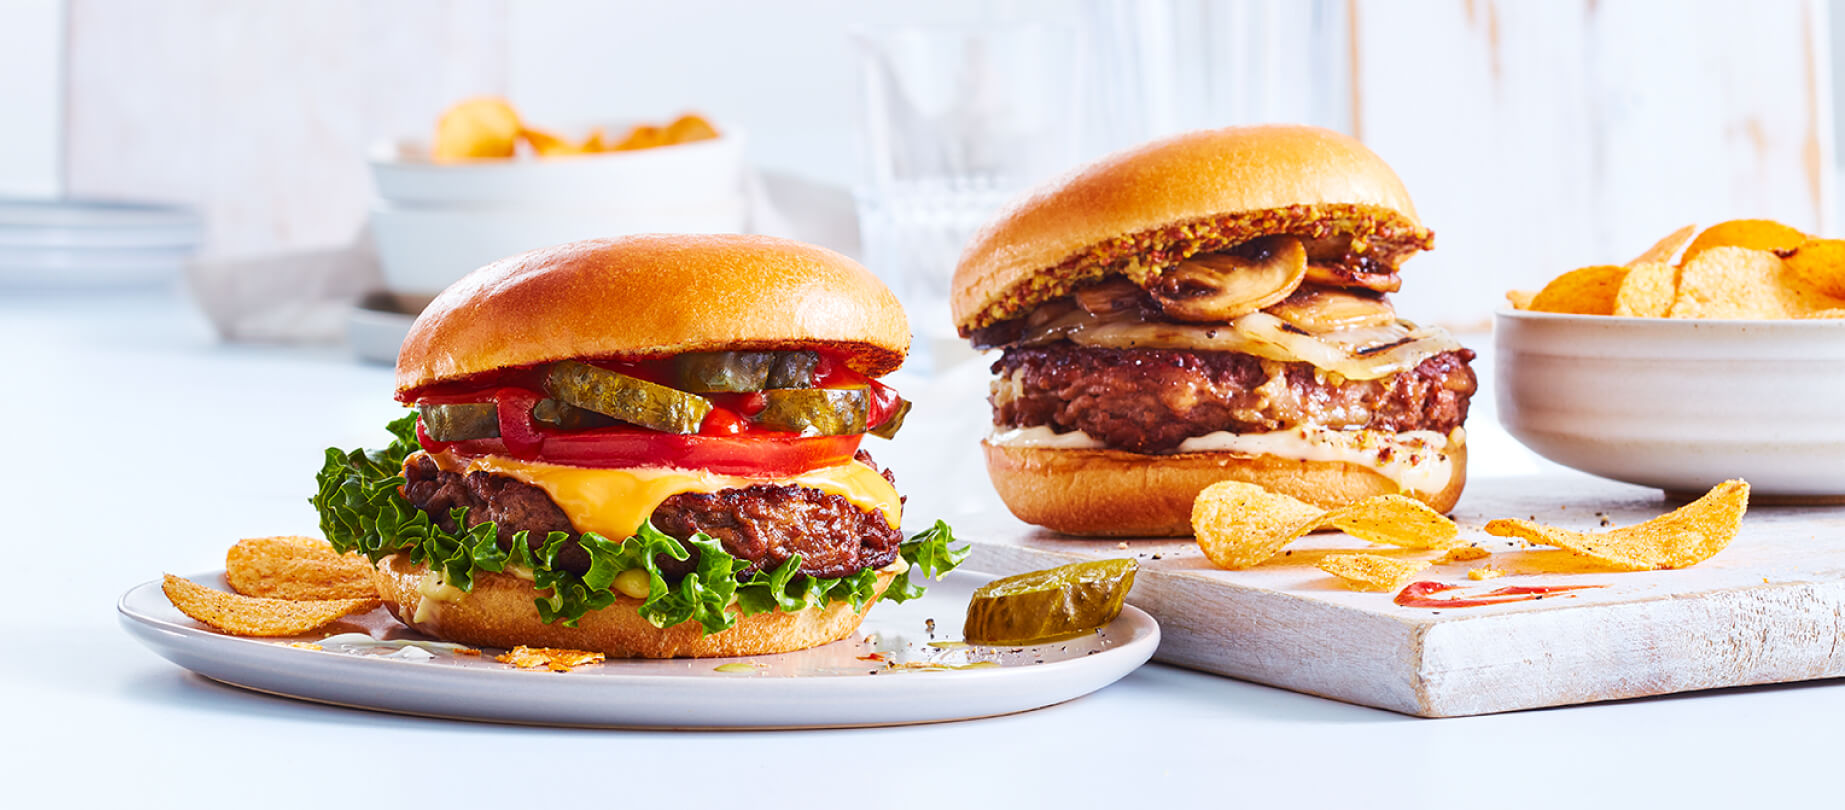 Burger Americana classique et burger Bistro de style hollandais sur fond blanc